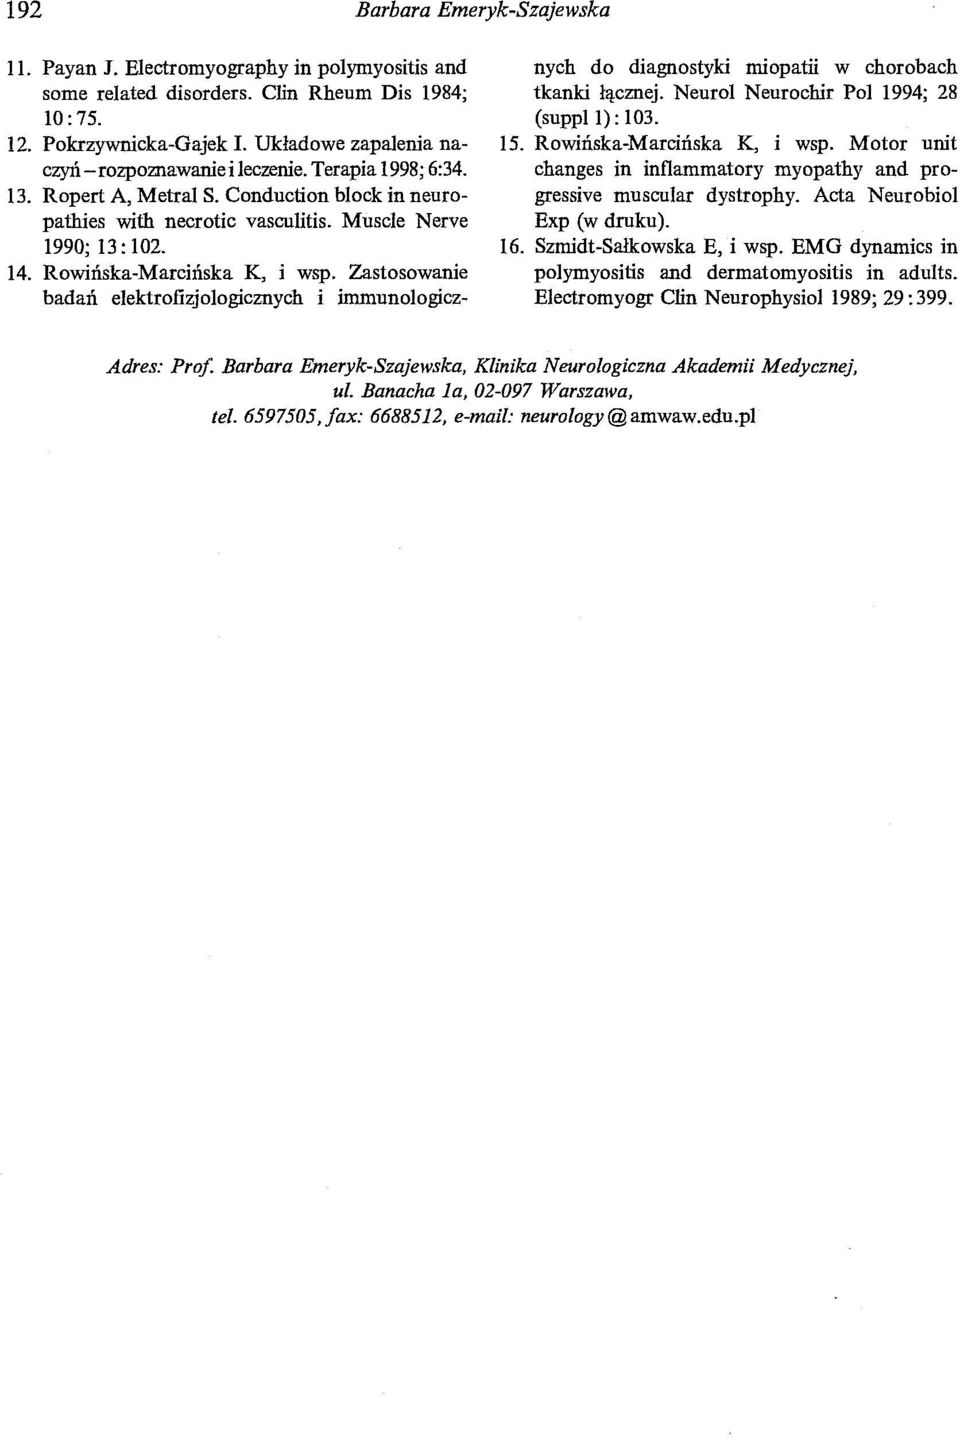 Rowińska-Marcińska K, i wsp. Zastosowanie badań elektrofizjologicznych i immunologicznych do diagnostyki miopatii w chorobach tkanki łącznej. Neurol Neurochir Pol 1994; 28 (suppl 1): 103. 15.